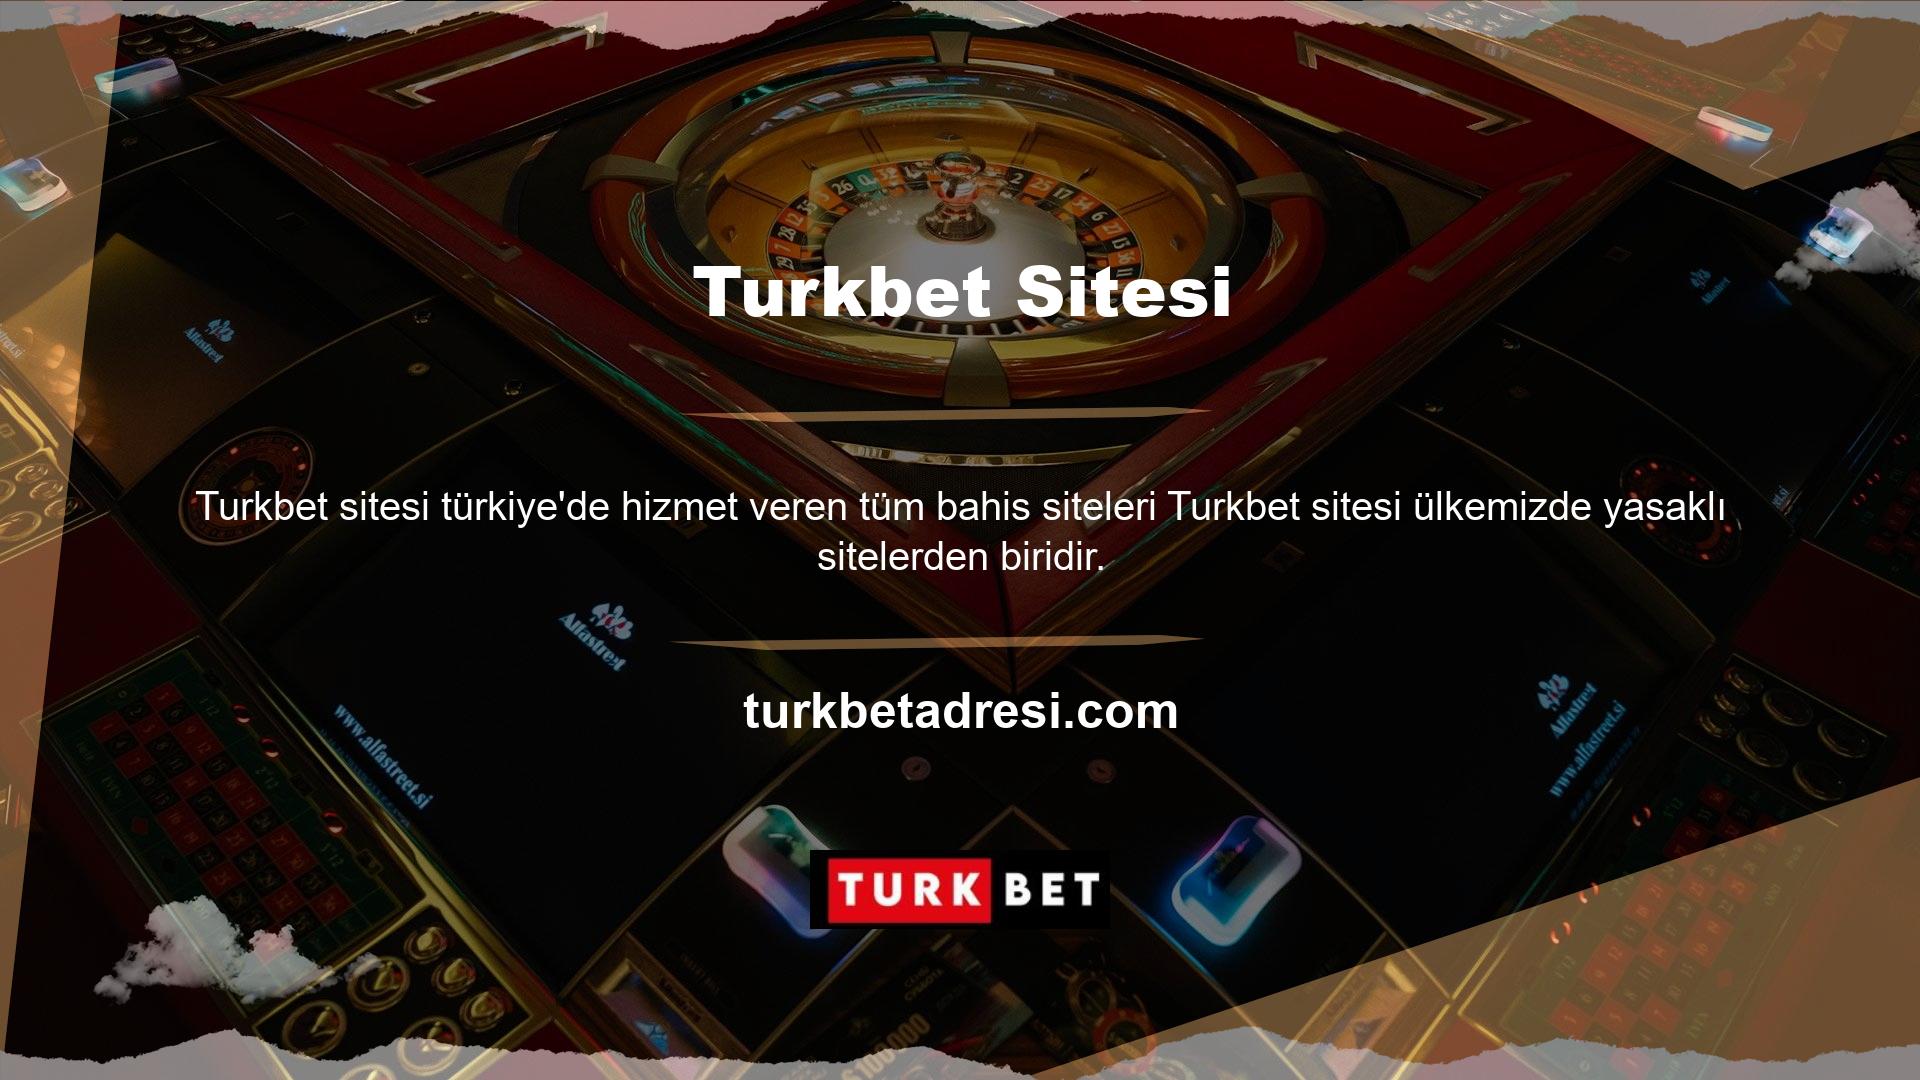 Tüm Türk casino siteleri, hizmetleri yasa ve yönetmeliklere uygun olmadığı için BTK tarafından düzenli olarak kapatılmaktadır